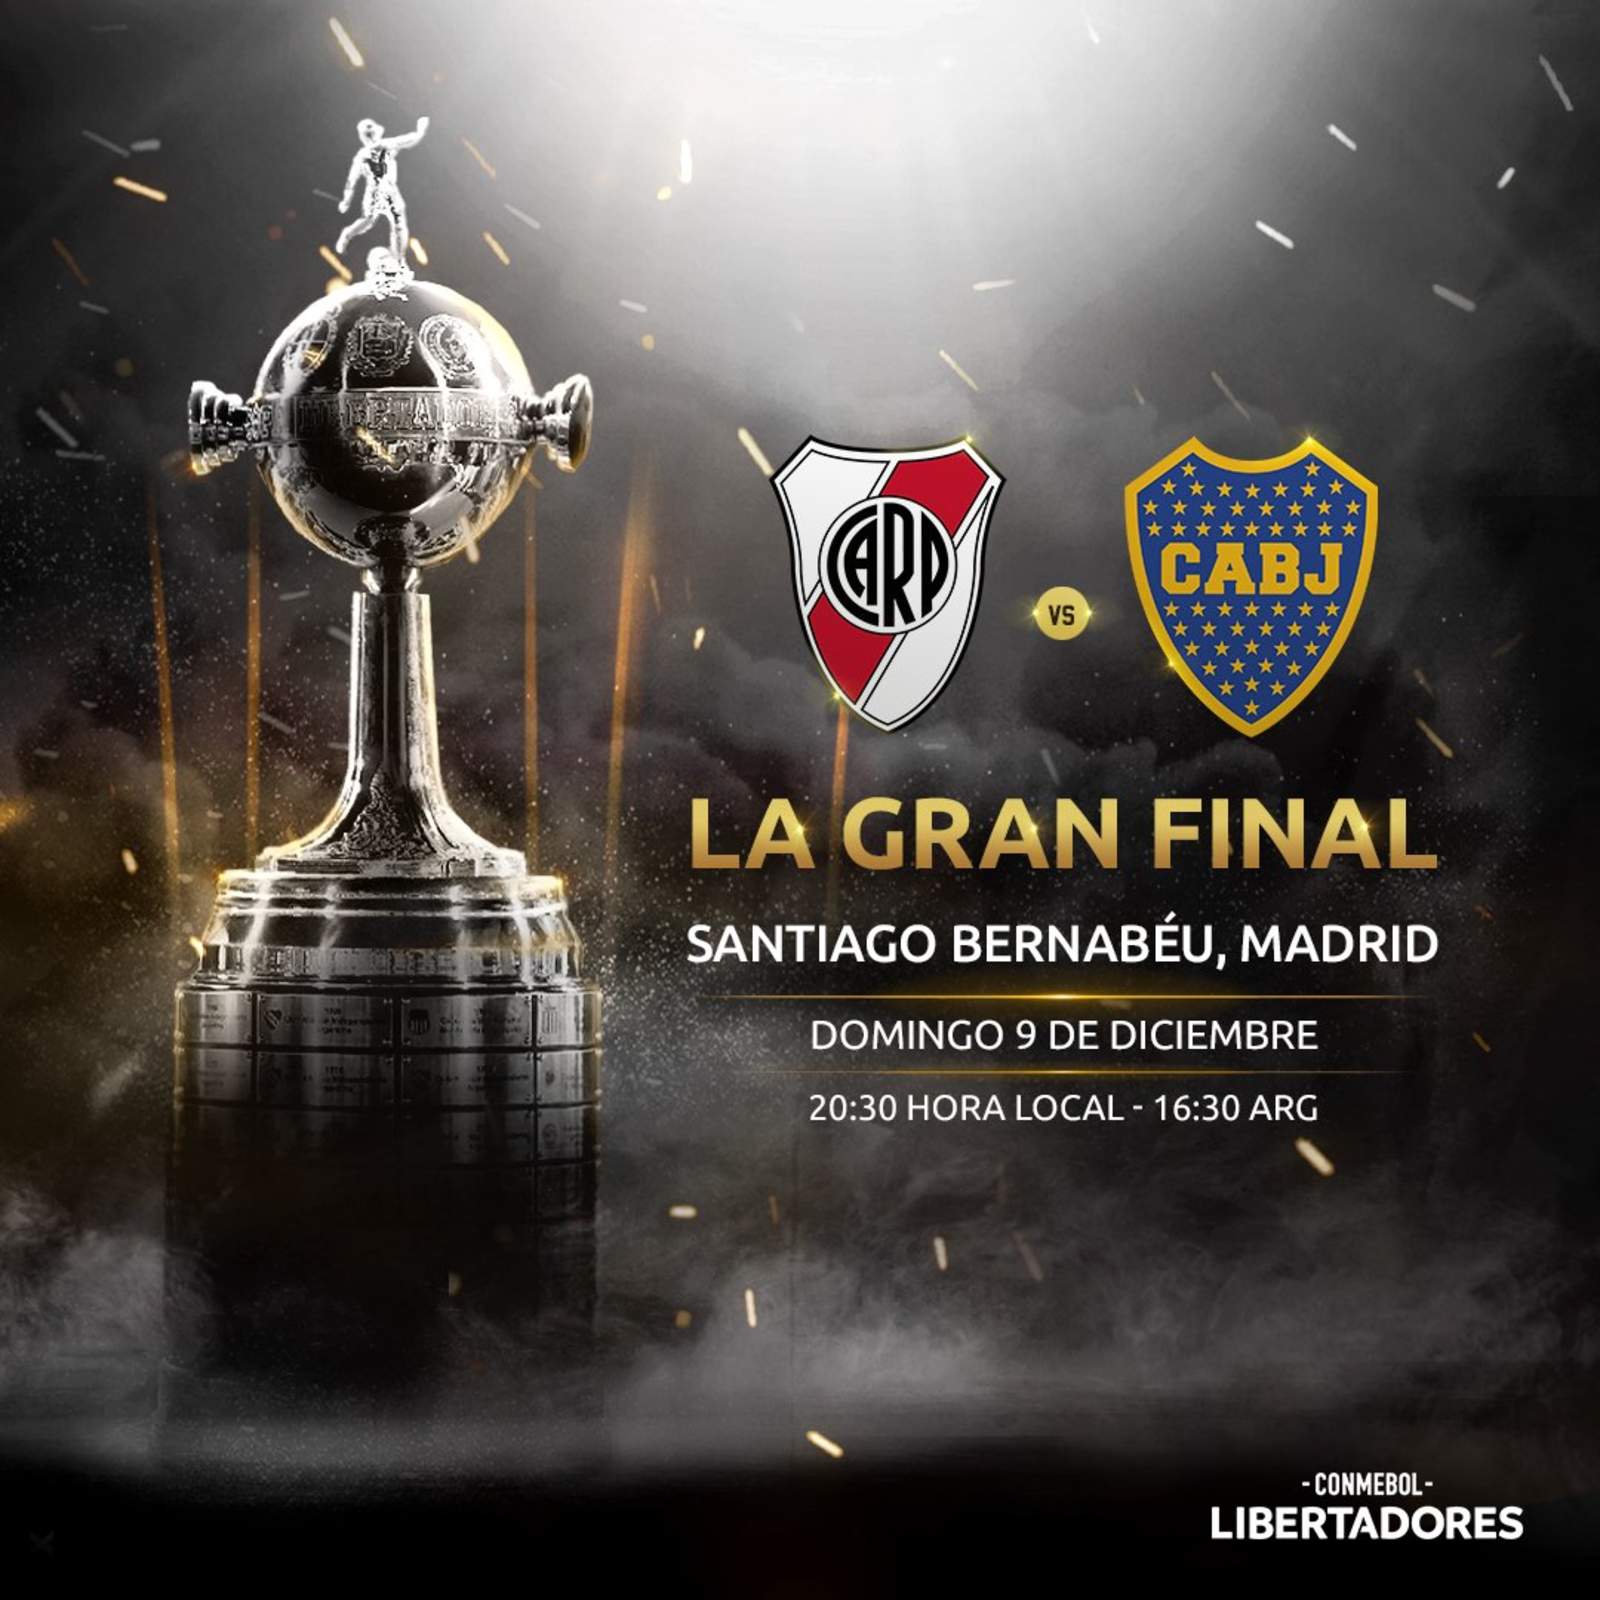 Final de Libertadores será en el Santiago Bernabéu; sancionan a River Plate